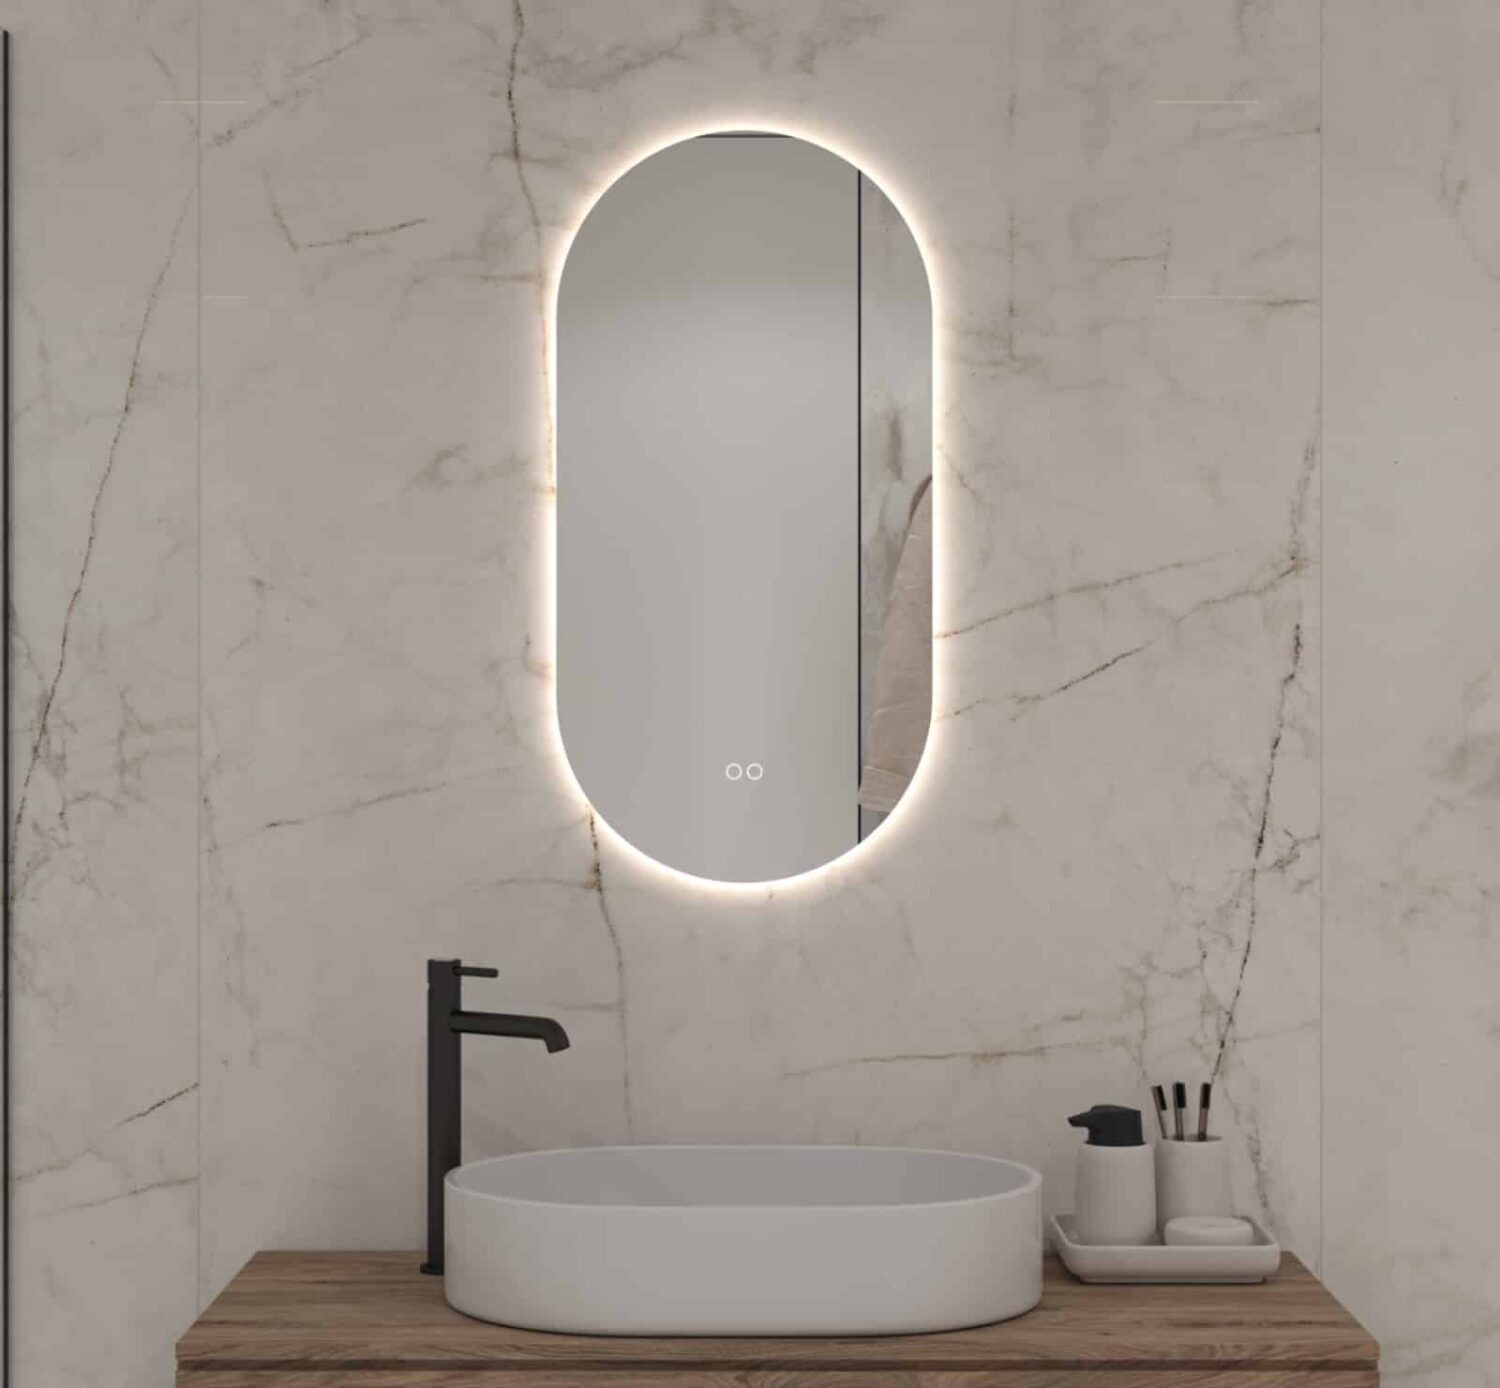 Smalle ovale badkamerspiegel met ingebouwde verlichting, spiegelverwarming en dubbele touch schakelaar